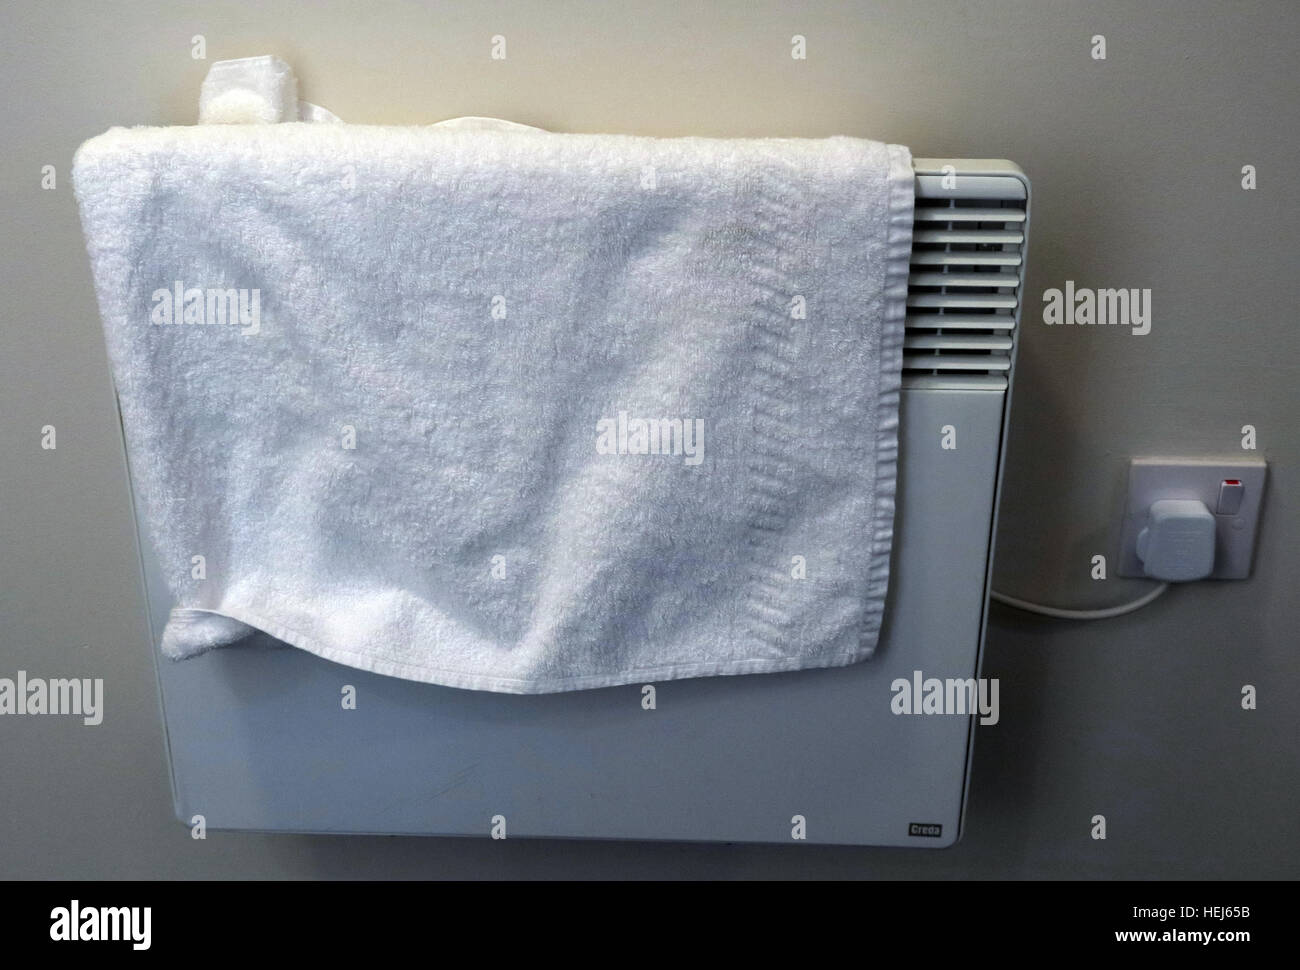 Sécher des serviettes ou des vêtements sur des appareils de chauffage à convection électrique, risque d'incendie Banque D'Images